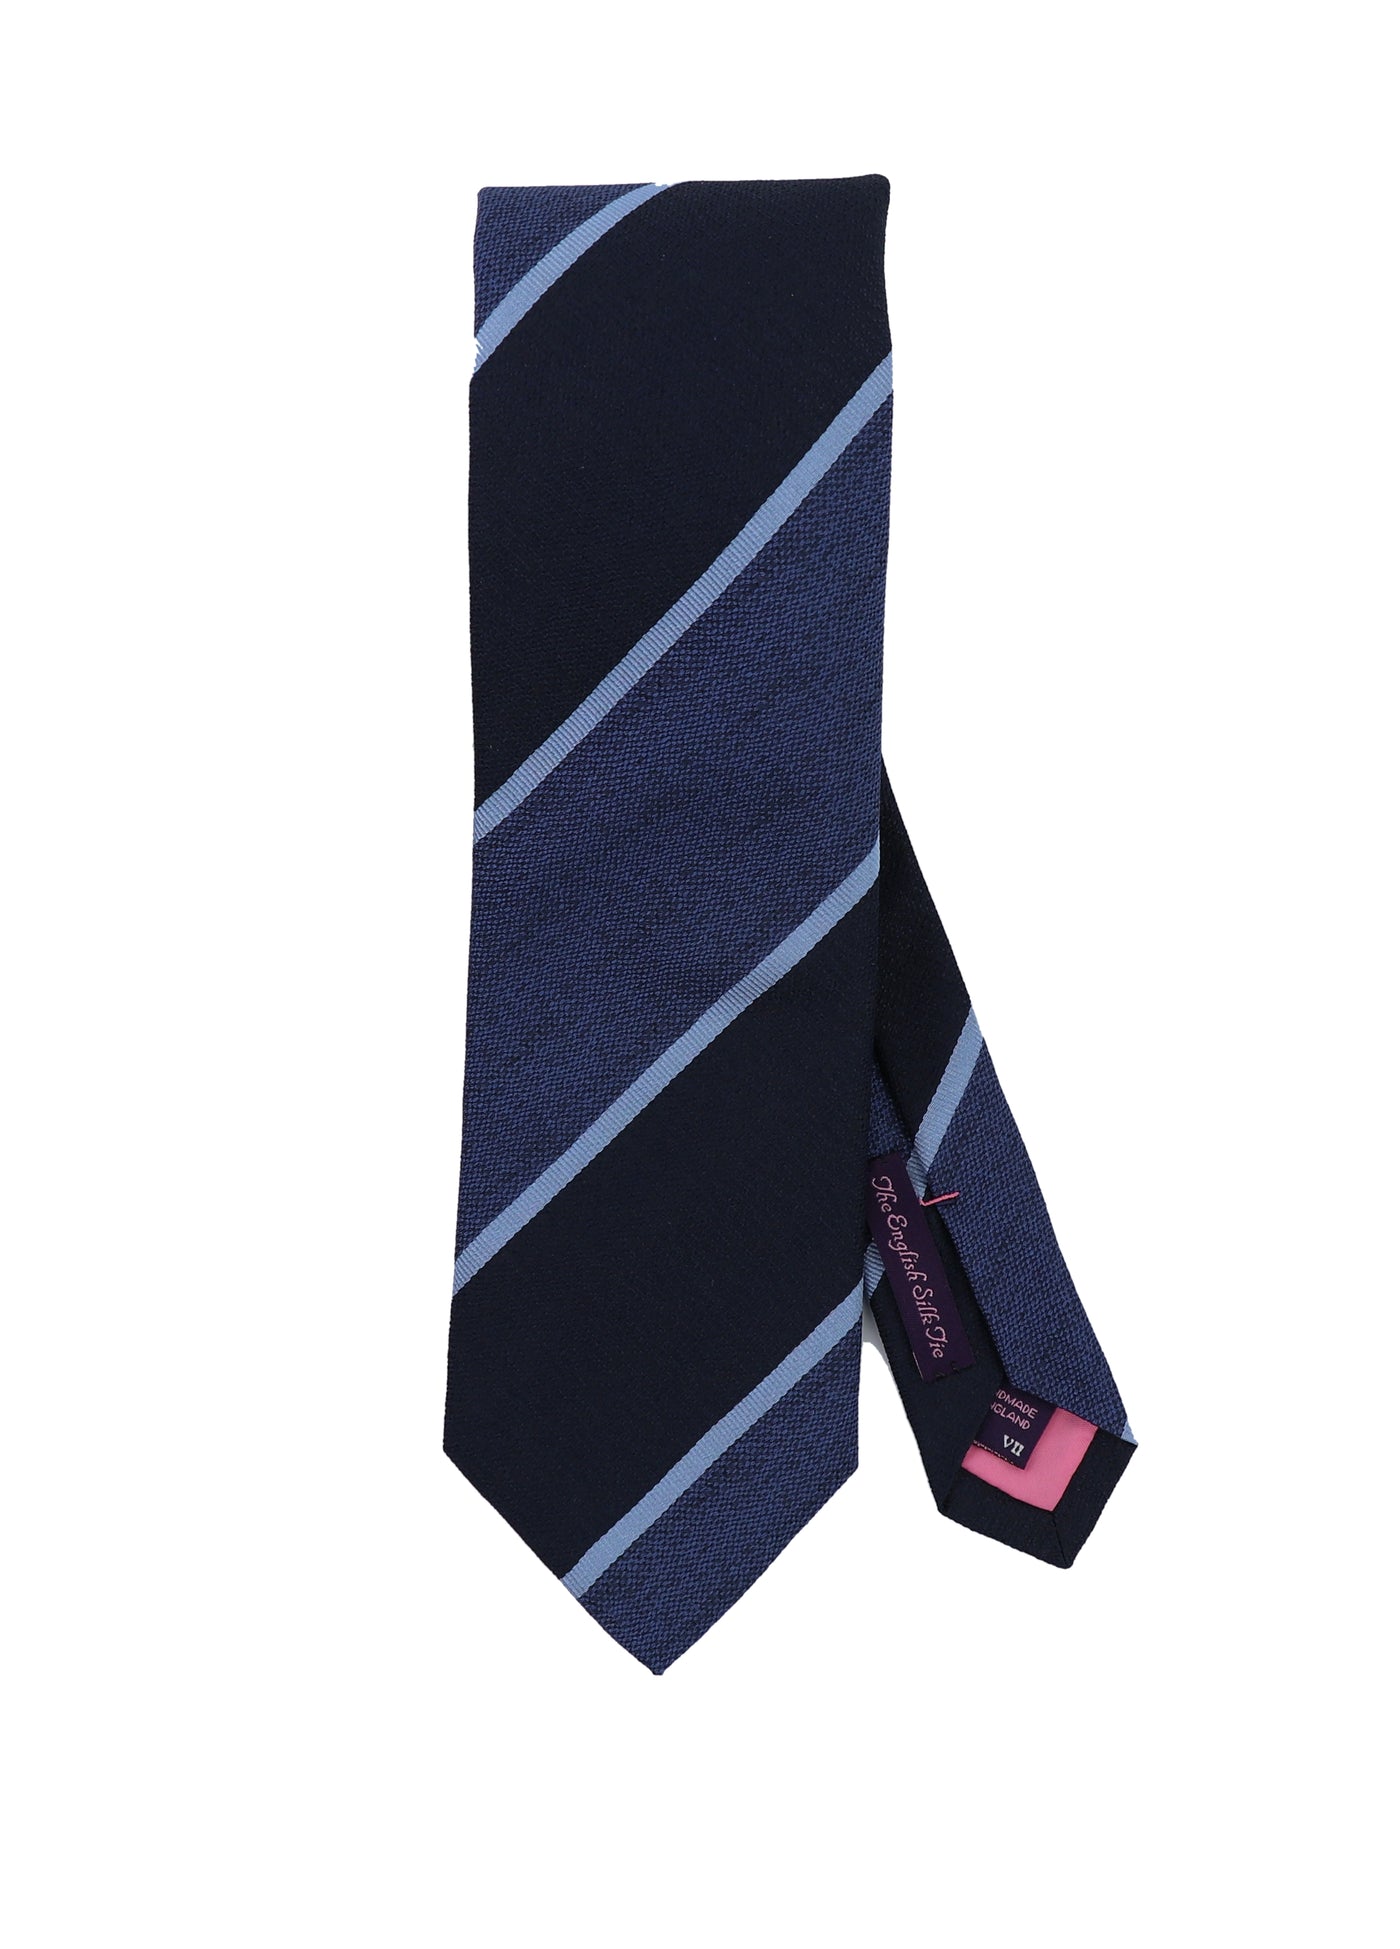 Kent Repp Stripe Necktie